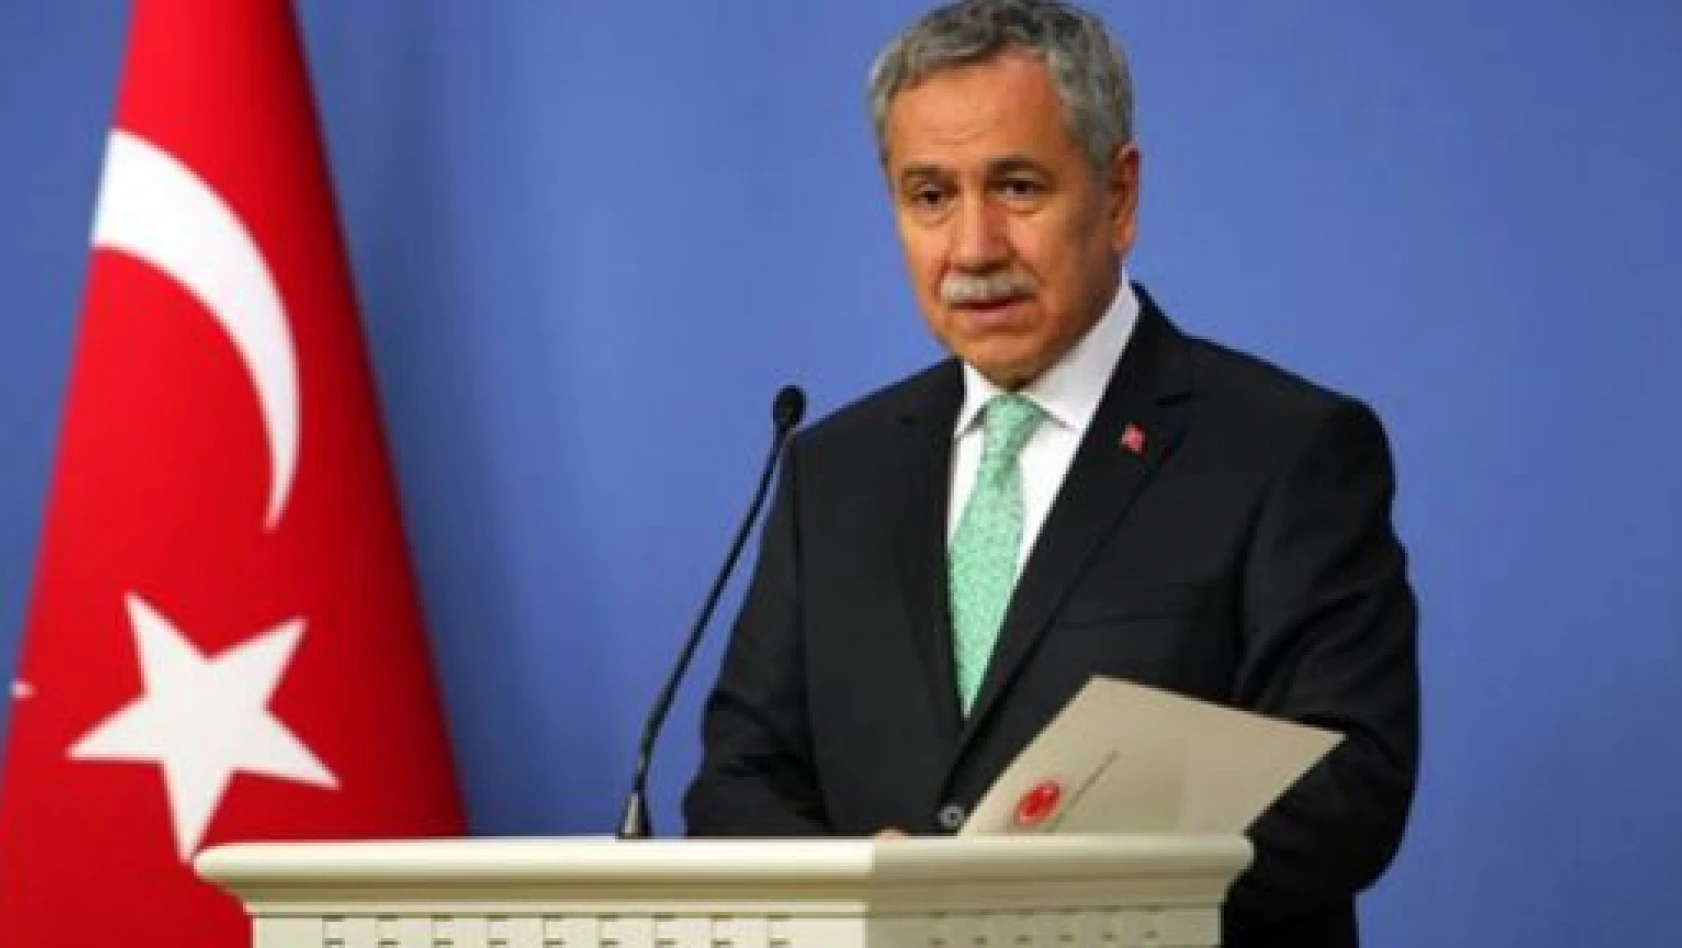 Başbakan Yardımcısı Arınç: 'Başörtüsünü Tartışanların Hepsi Millet Nazarında Kaybetti' 